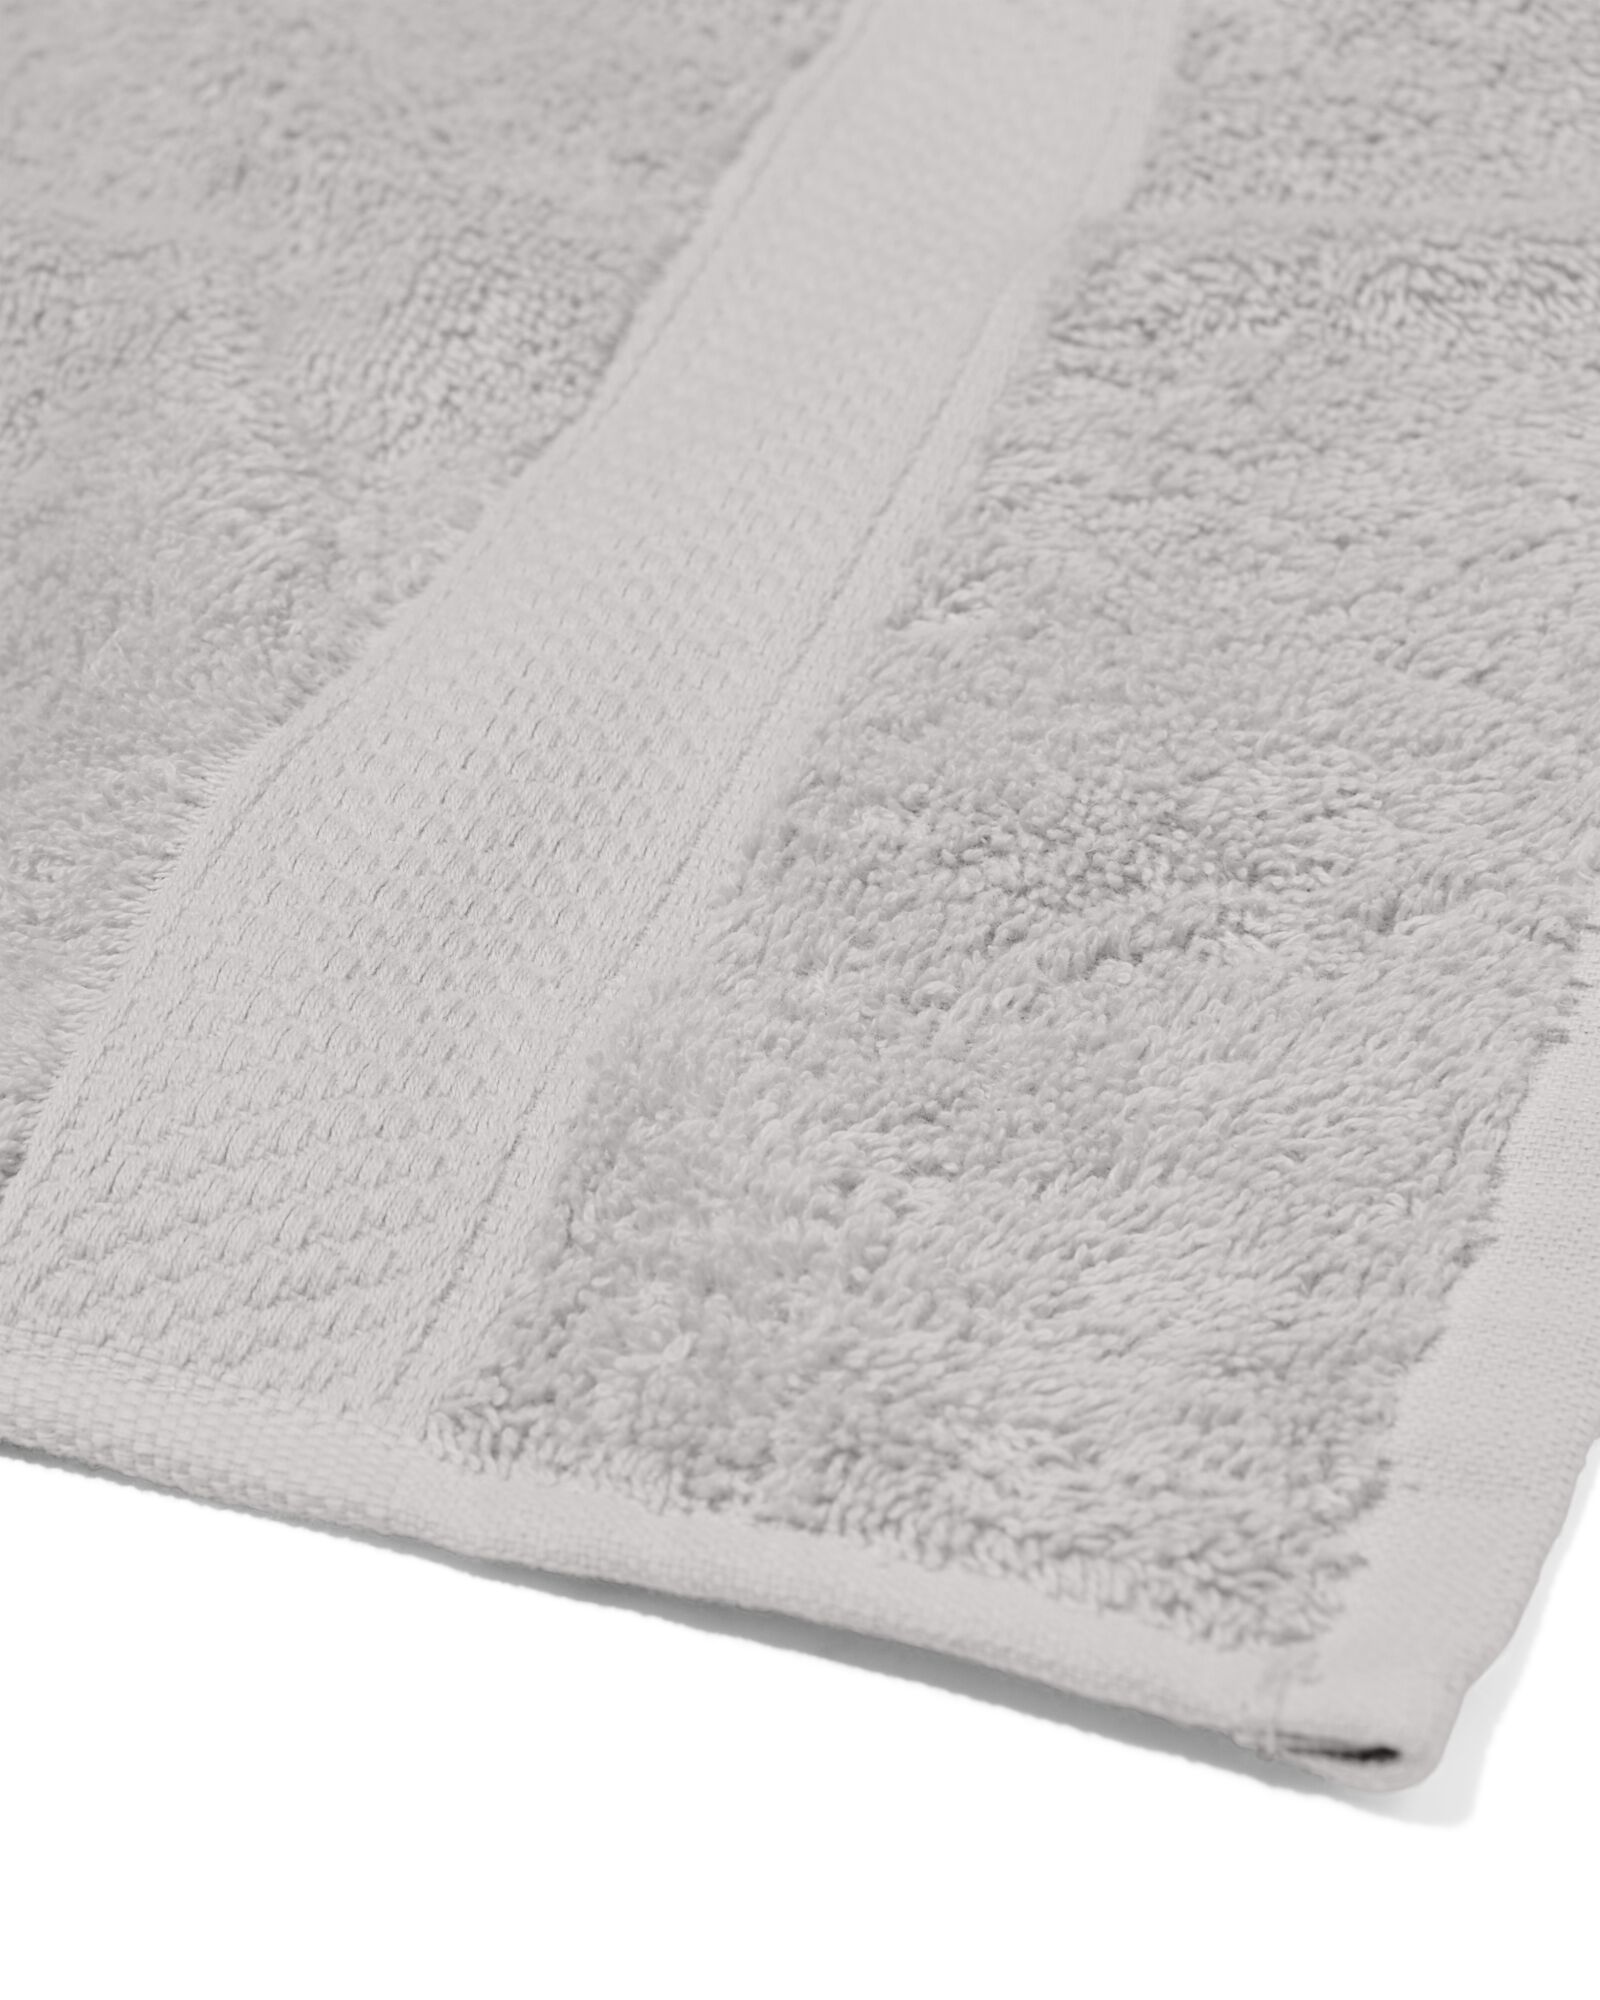 handdoek 100x150 zware kwaliteit lichtgrijs - 5230076 - HEMA